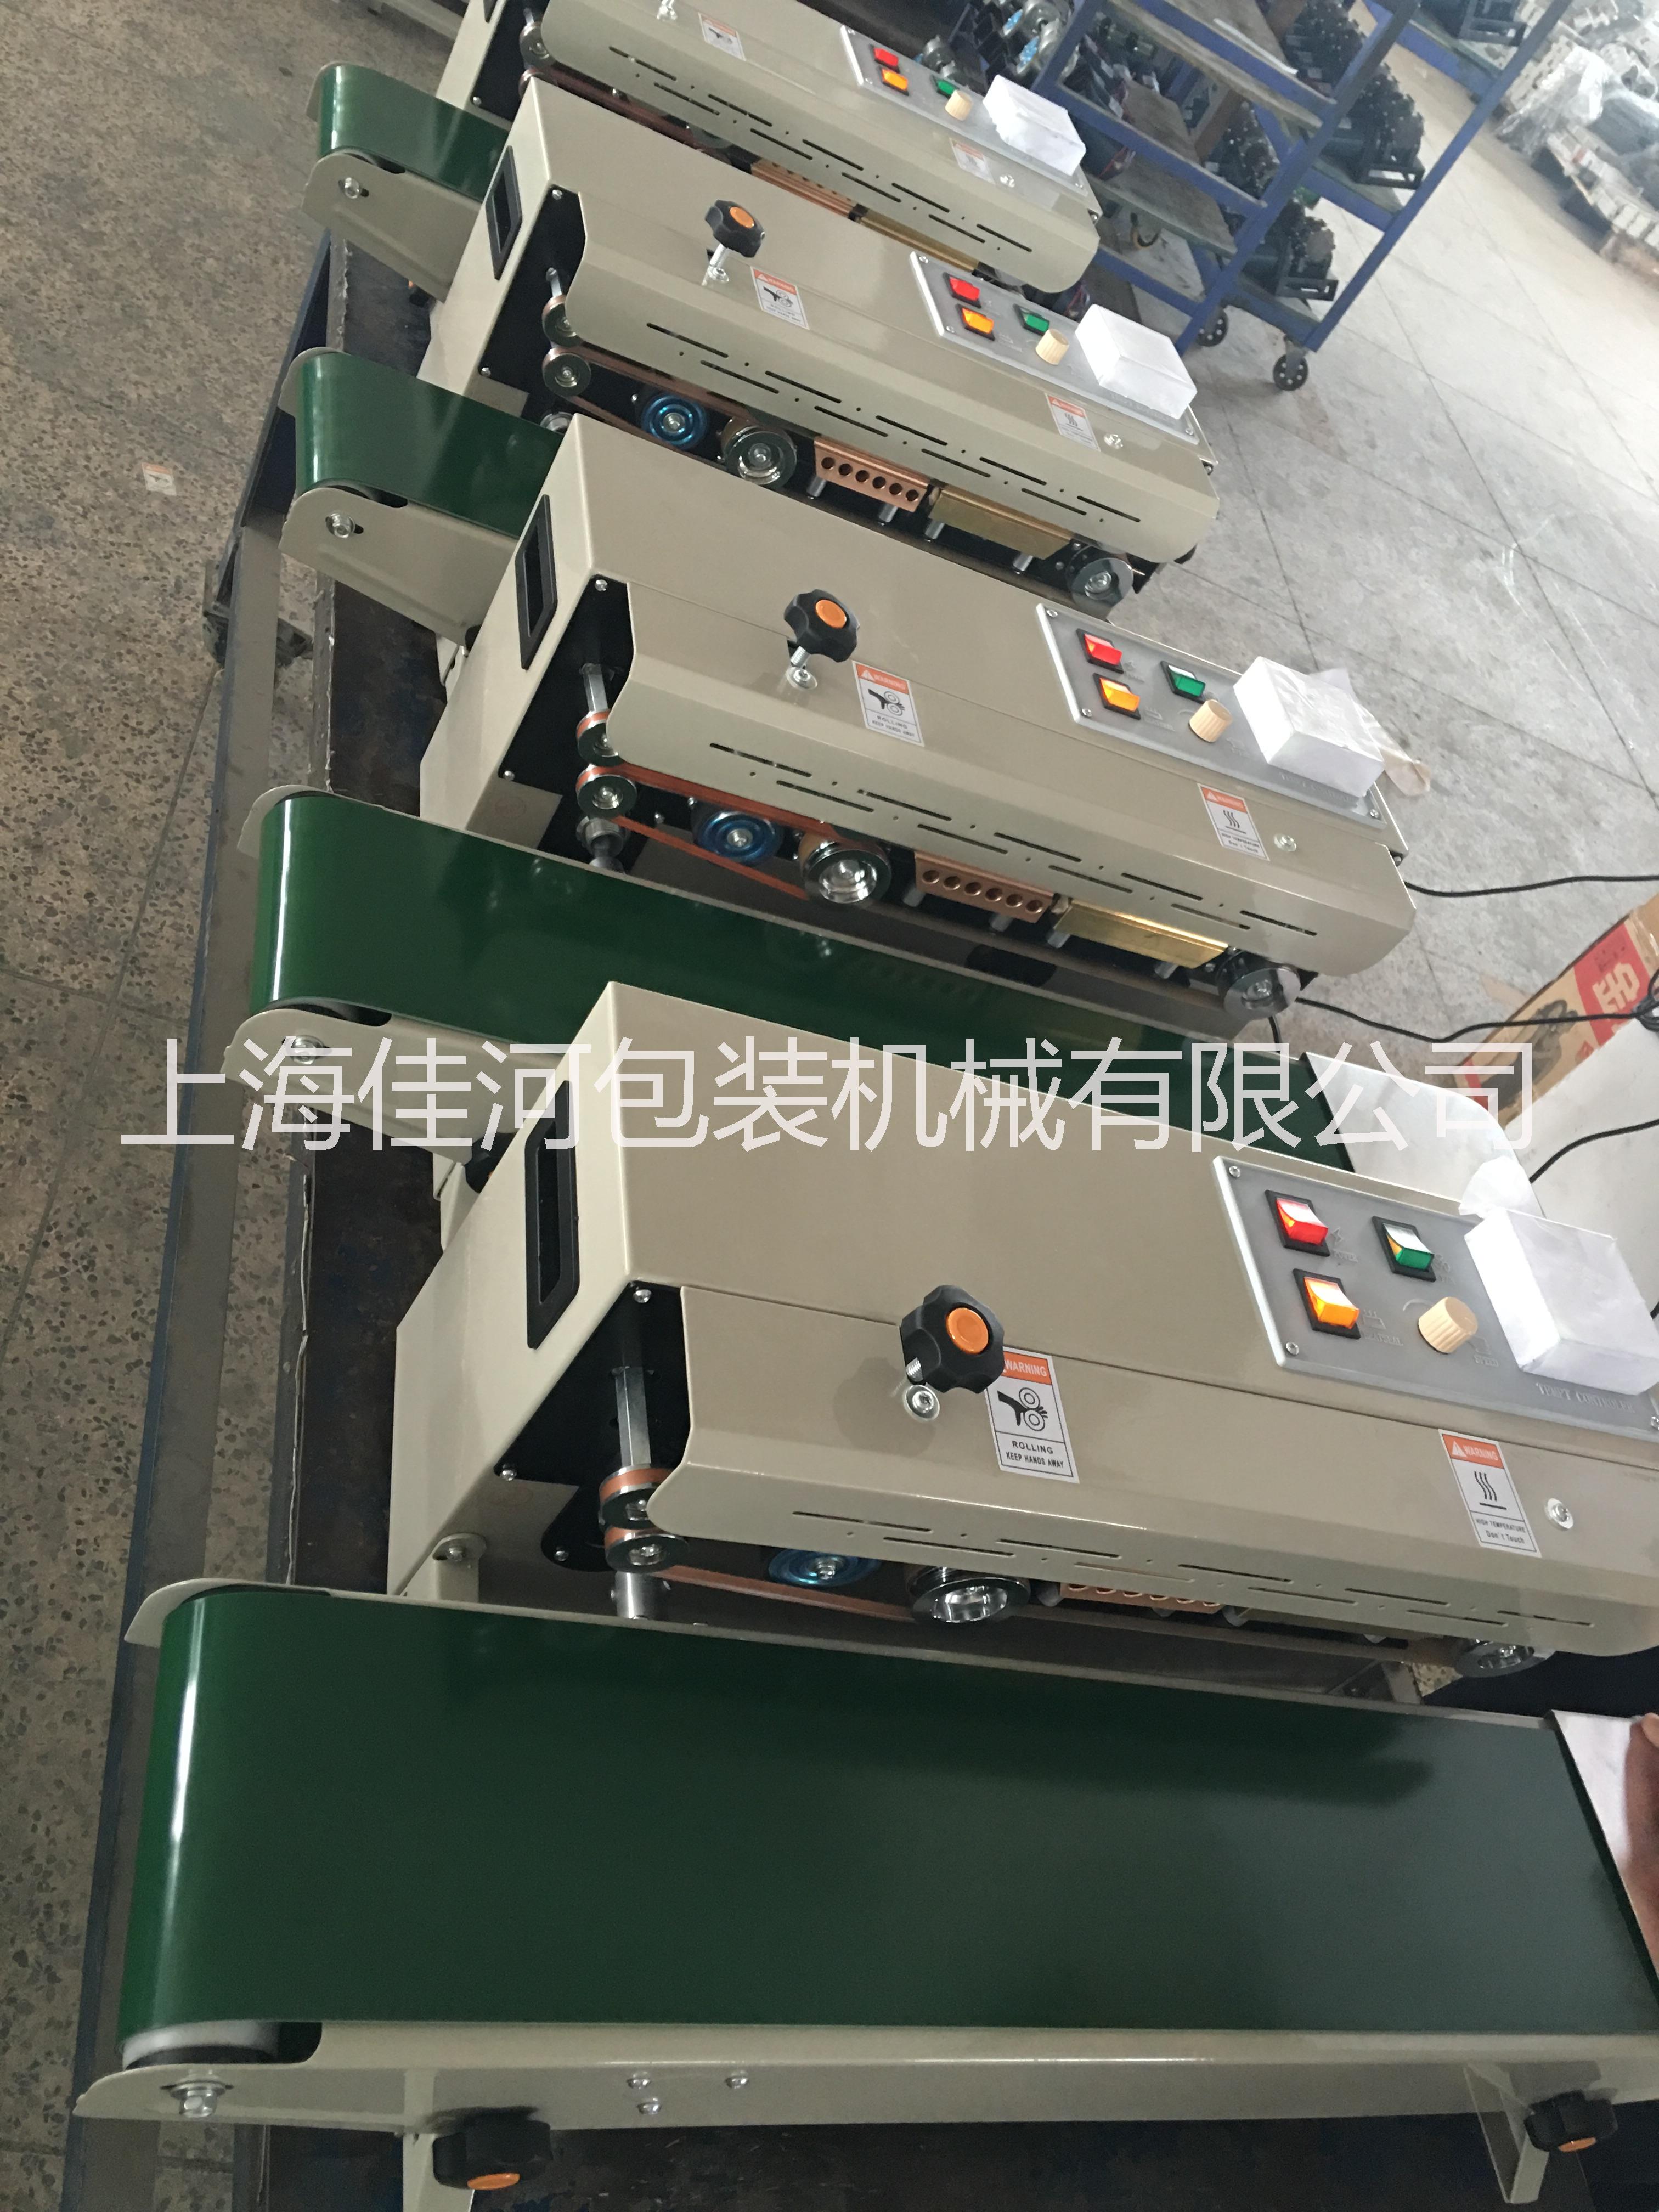 上海市FR-900连续式封口印字封口厂家FR-900连续式封口印字封口机、上海封口机系列生产供应厂家、墨轮印字封口机、单层膜复合薄膜封口机、食品包装袋的封口机